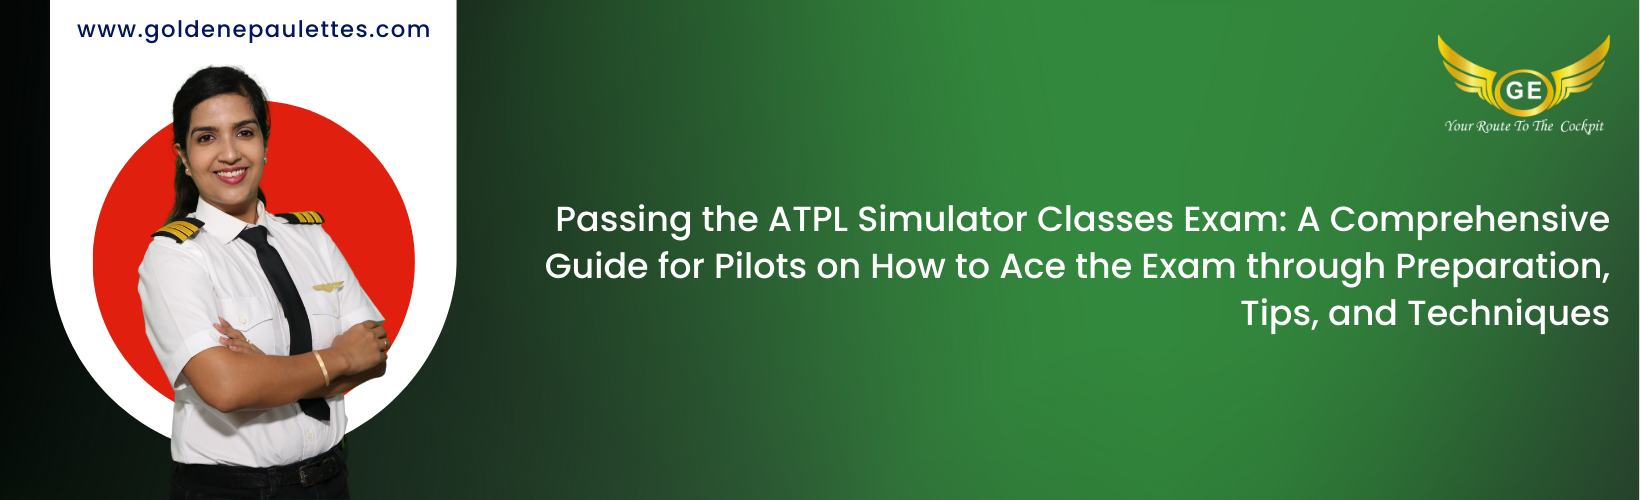 Utilizing Aviation Course Books to Prepare for ATPL Simulator Classes